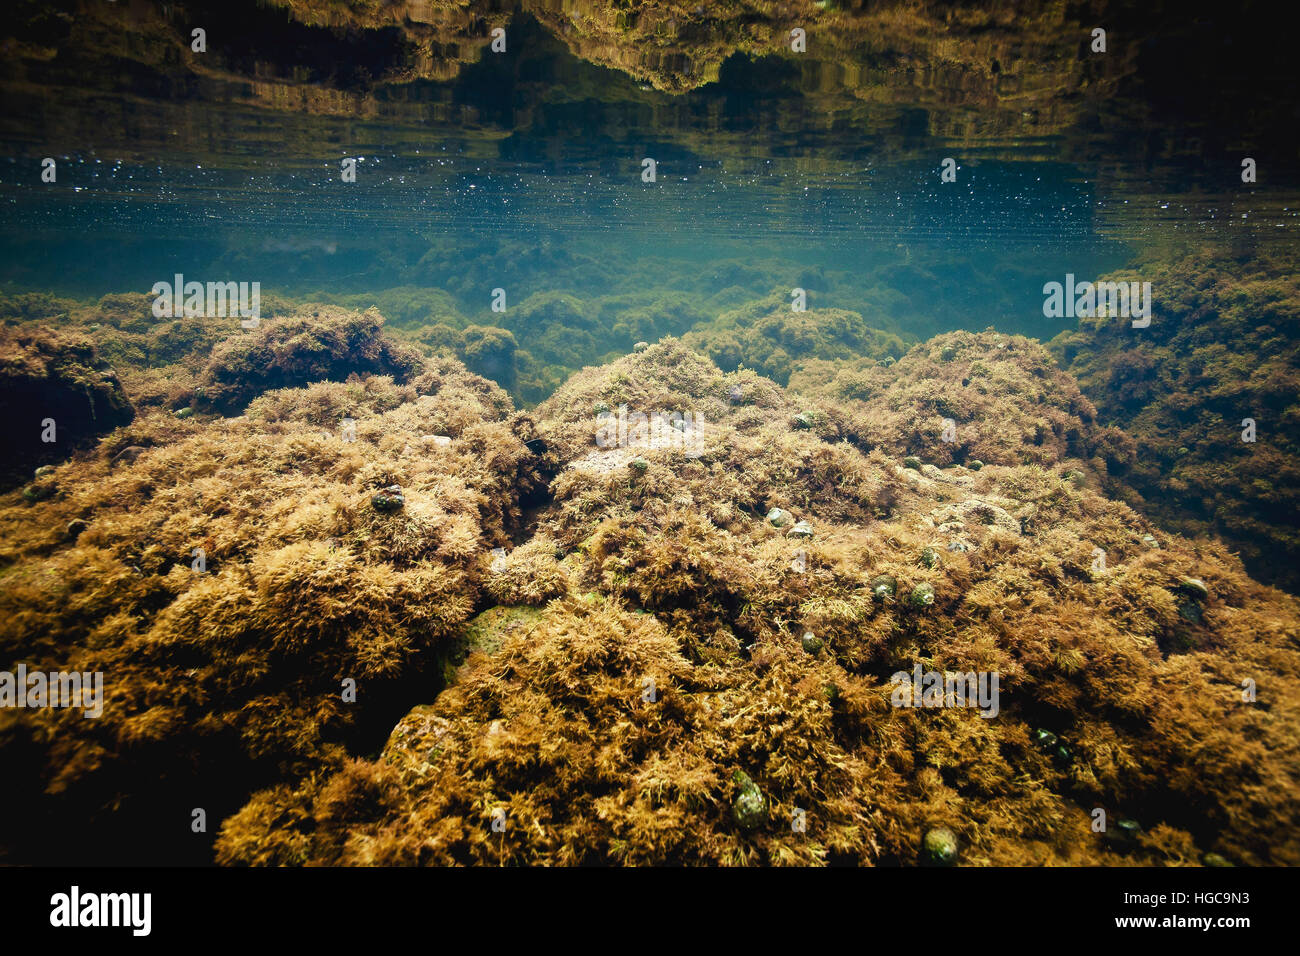 Ein Unterwasser Bild eines Gezeiten-Pools, das voll von Einsiedlerkrebse an der Küste des Pazifischen Ozeans in der Nähe von Palos Verdes, California. Stockfoto